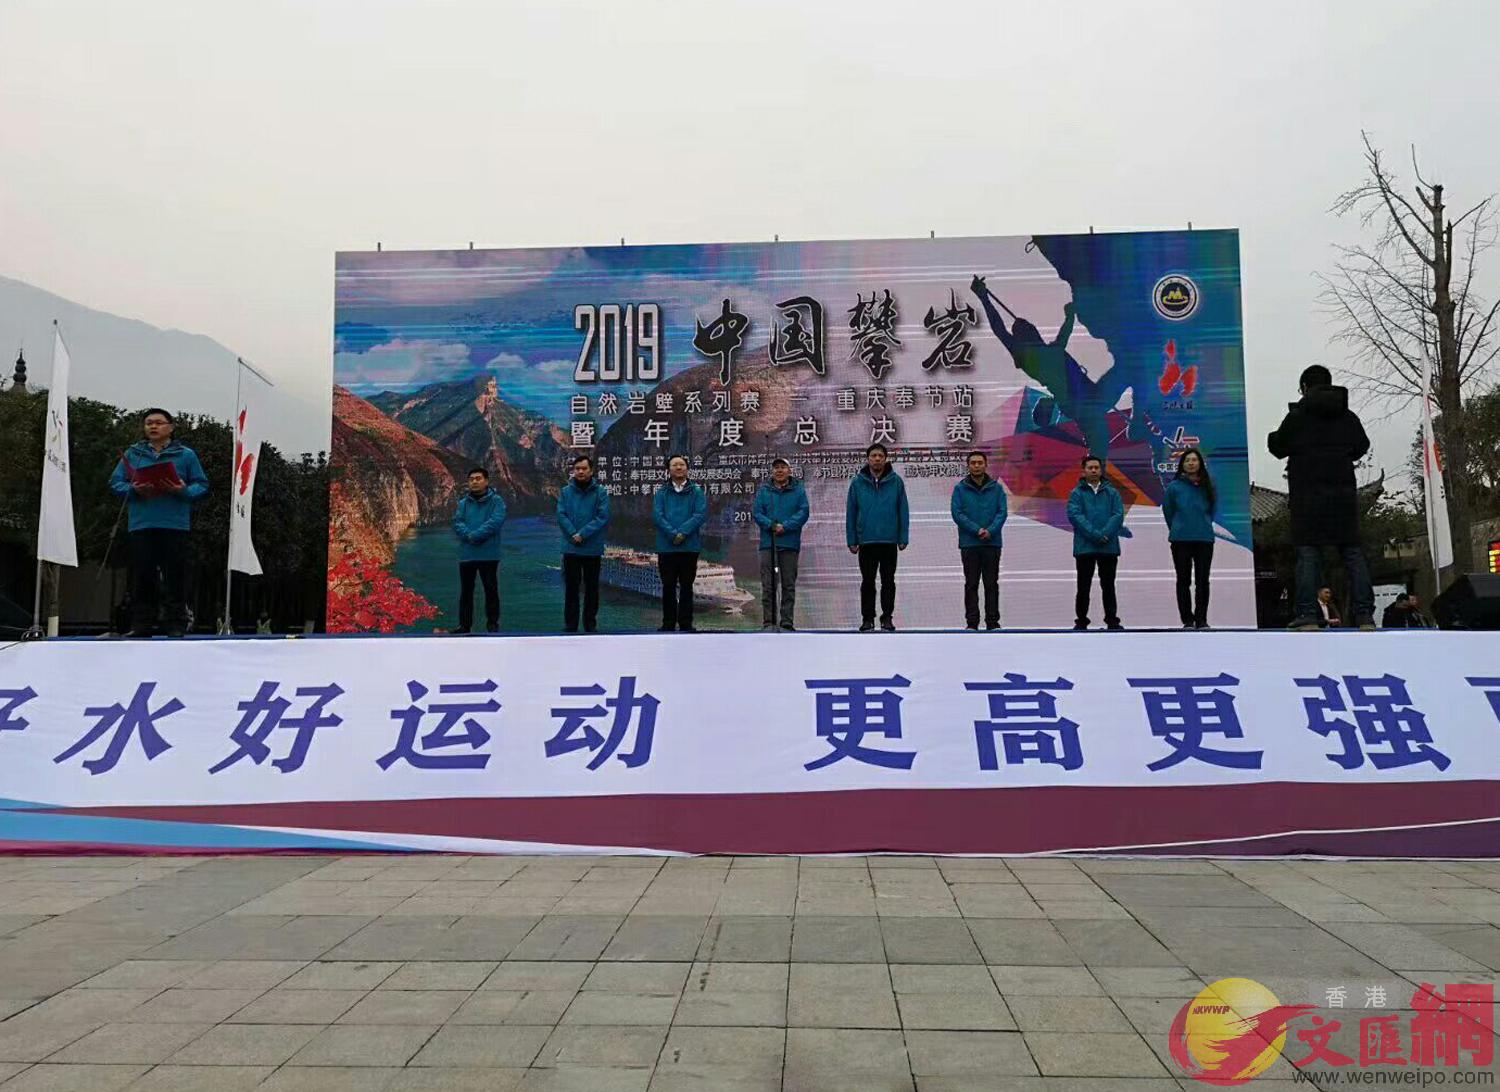 2019中國攀巖自然巖壁系列賽]重慶奉節站^暨年度總決賽今日在夔門開賽]張蕊 攝^